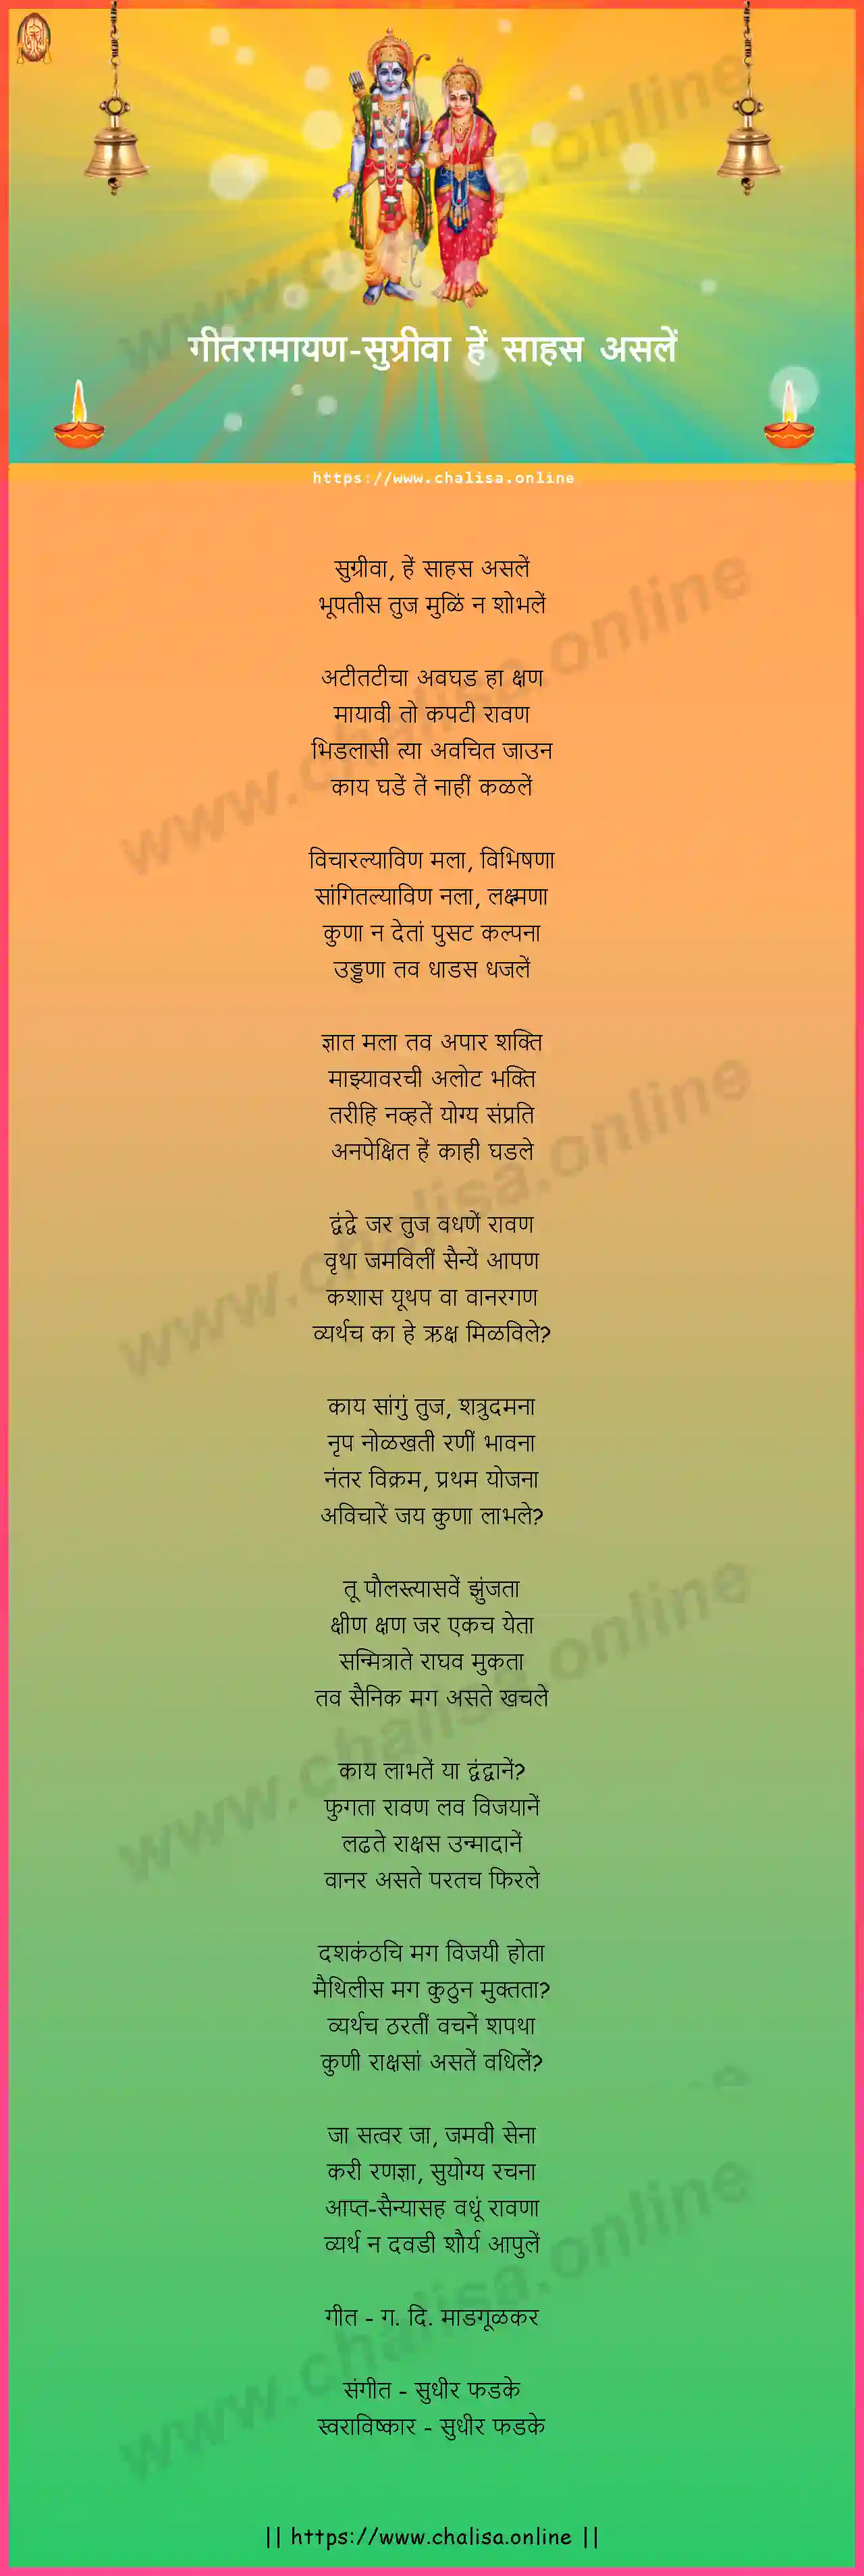 sugriva-he-sahas-asale-geet-ramayan-marathi-lyrics-download